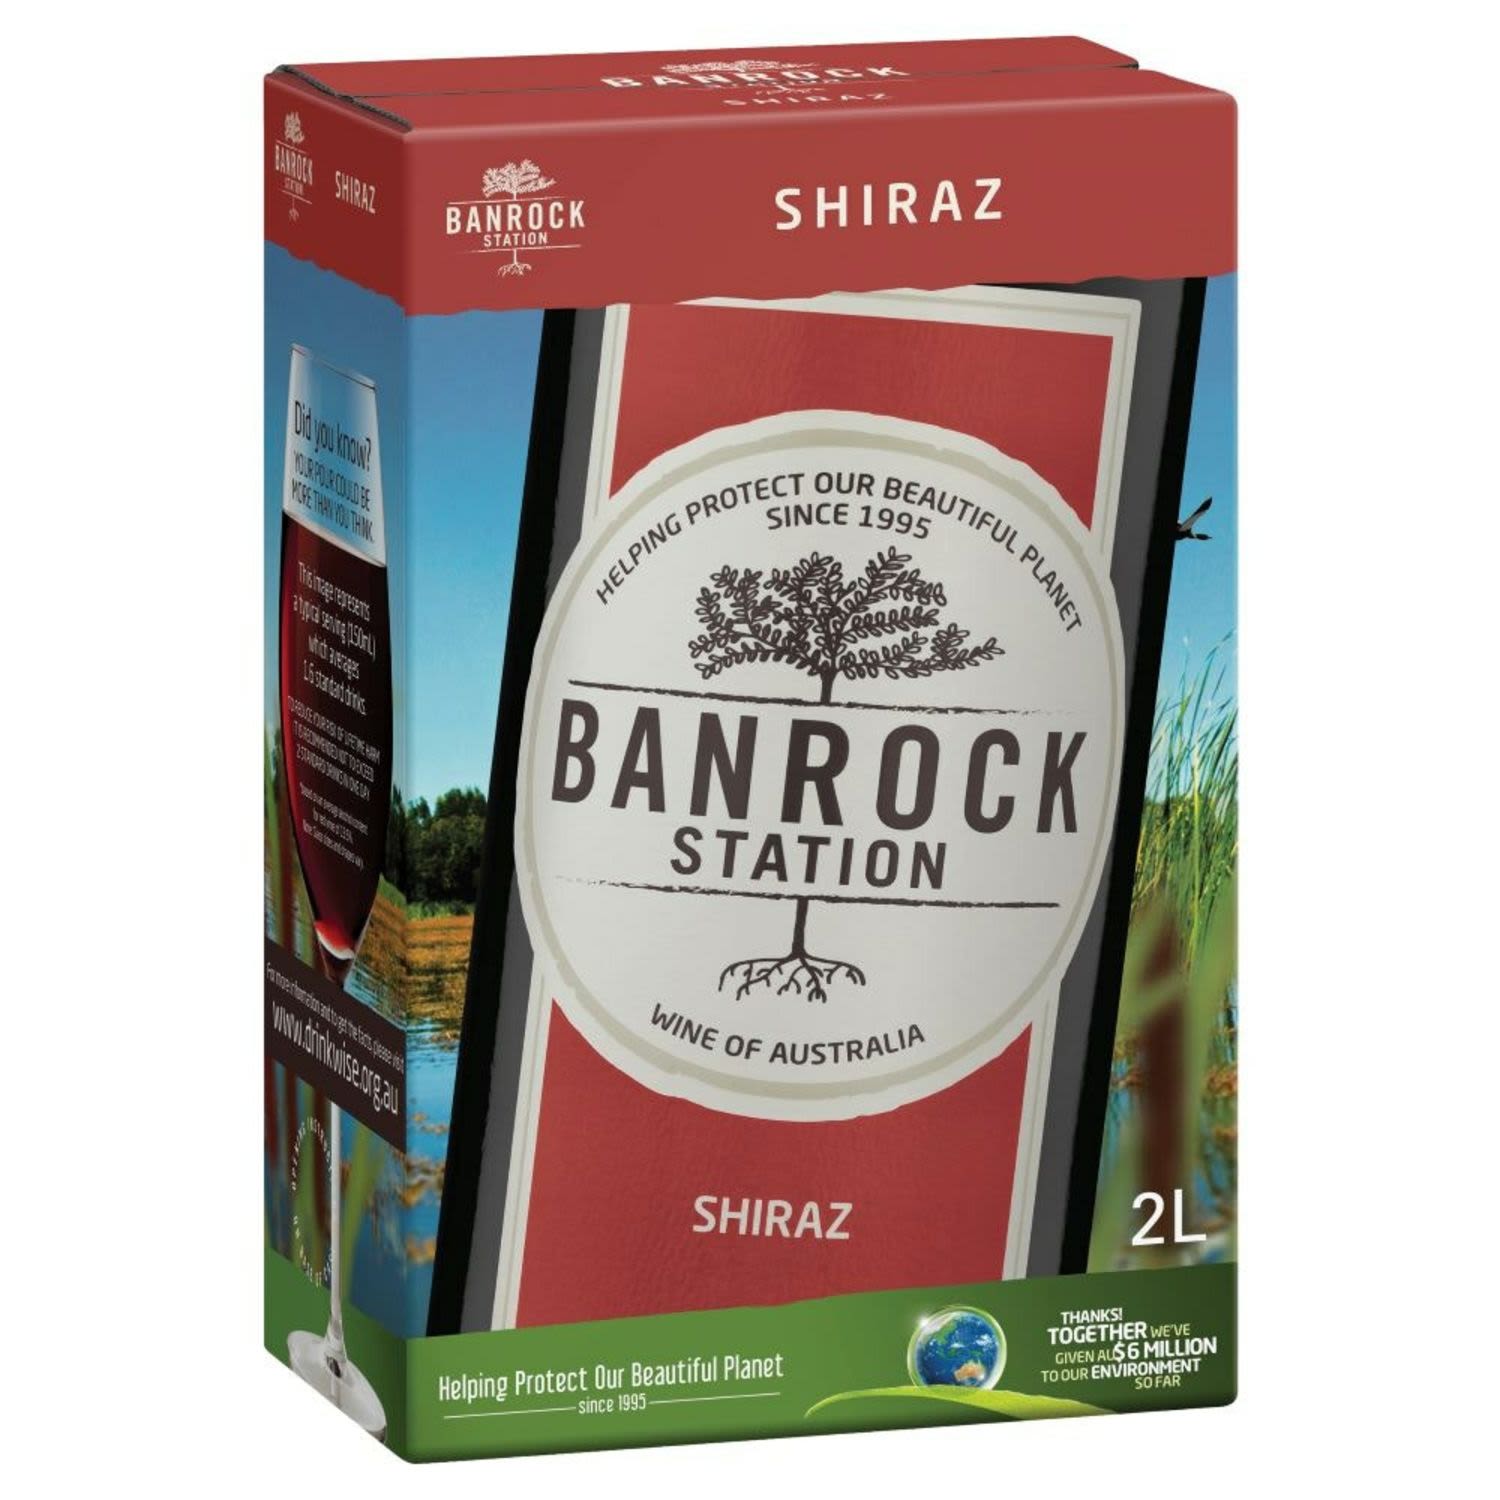 Banrock Station Shiraz Cask 2L<br /> <br />Alcohol Volume: 13.00%<br /><br />Pack Format: Cask<br /><br />Standard Drinks: 20.5<br /><br />Pack Type: Cask<br /><br />Country of Origin: Australia<br /><br />Region: Riverland<br /><br />Vintage: Non Vintage<br />